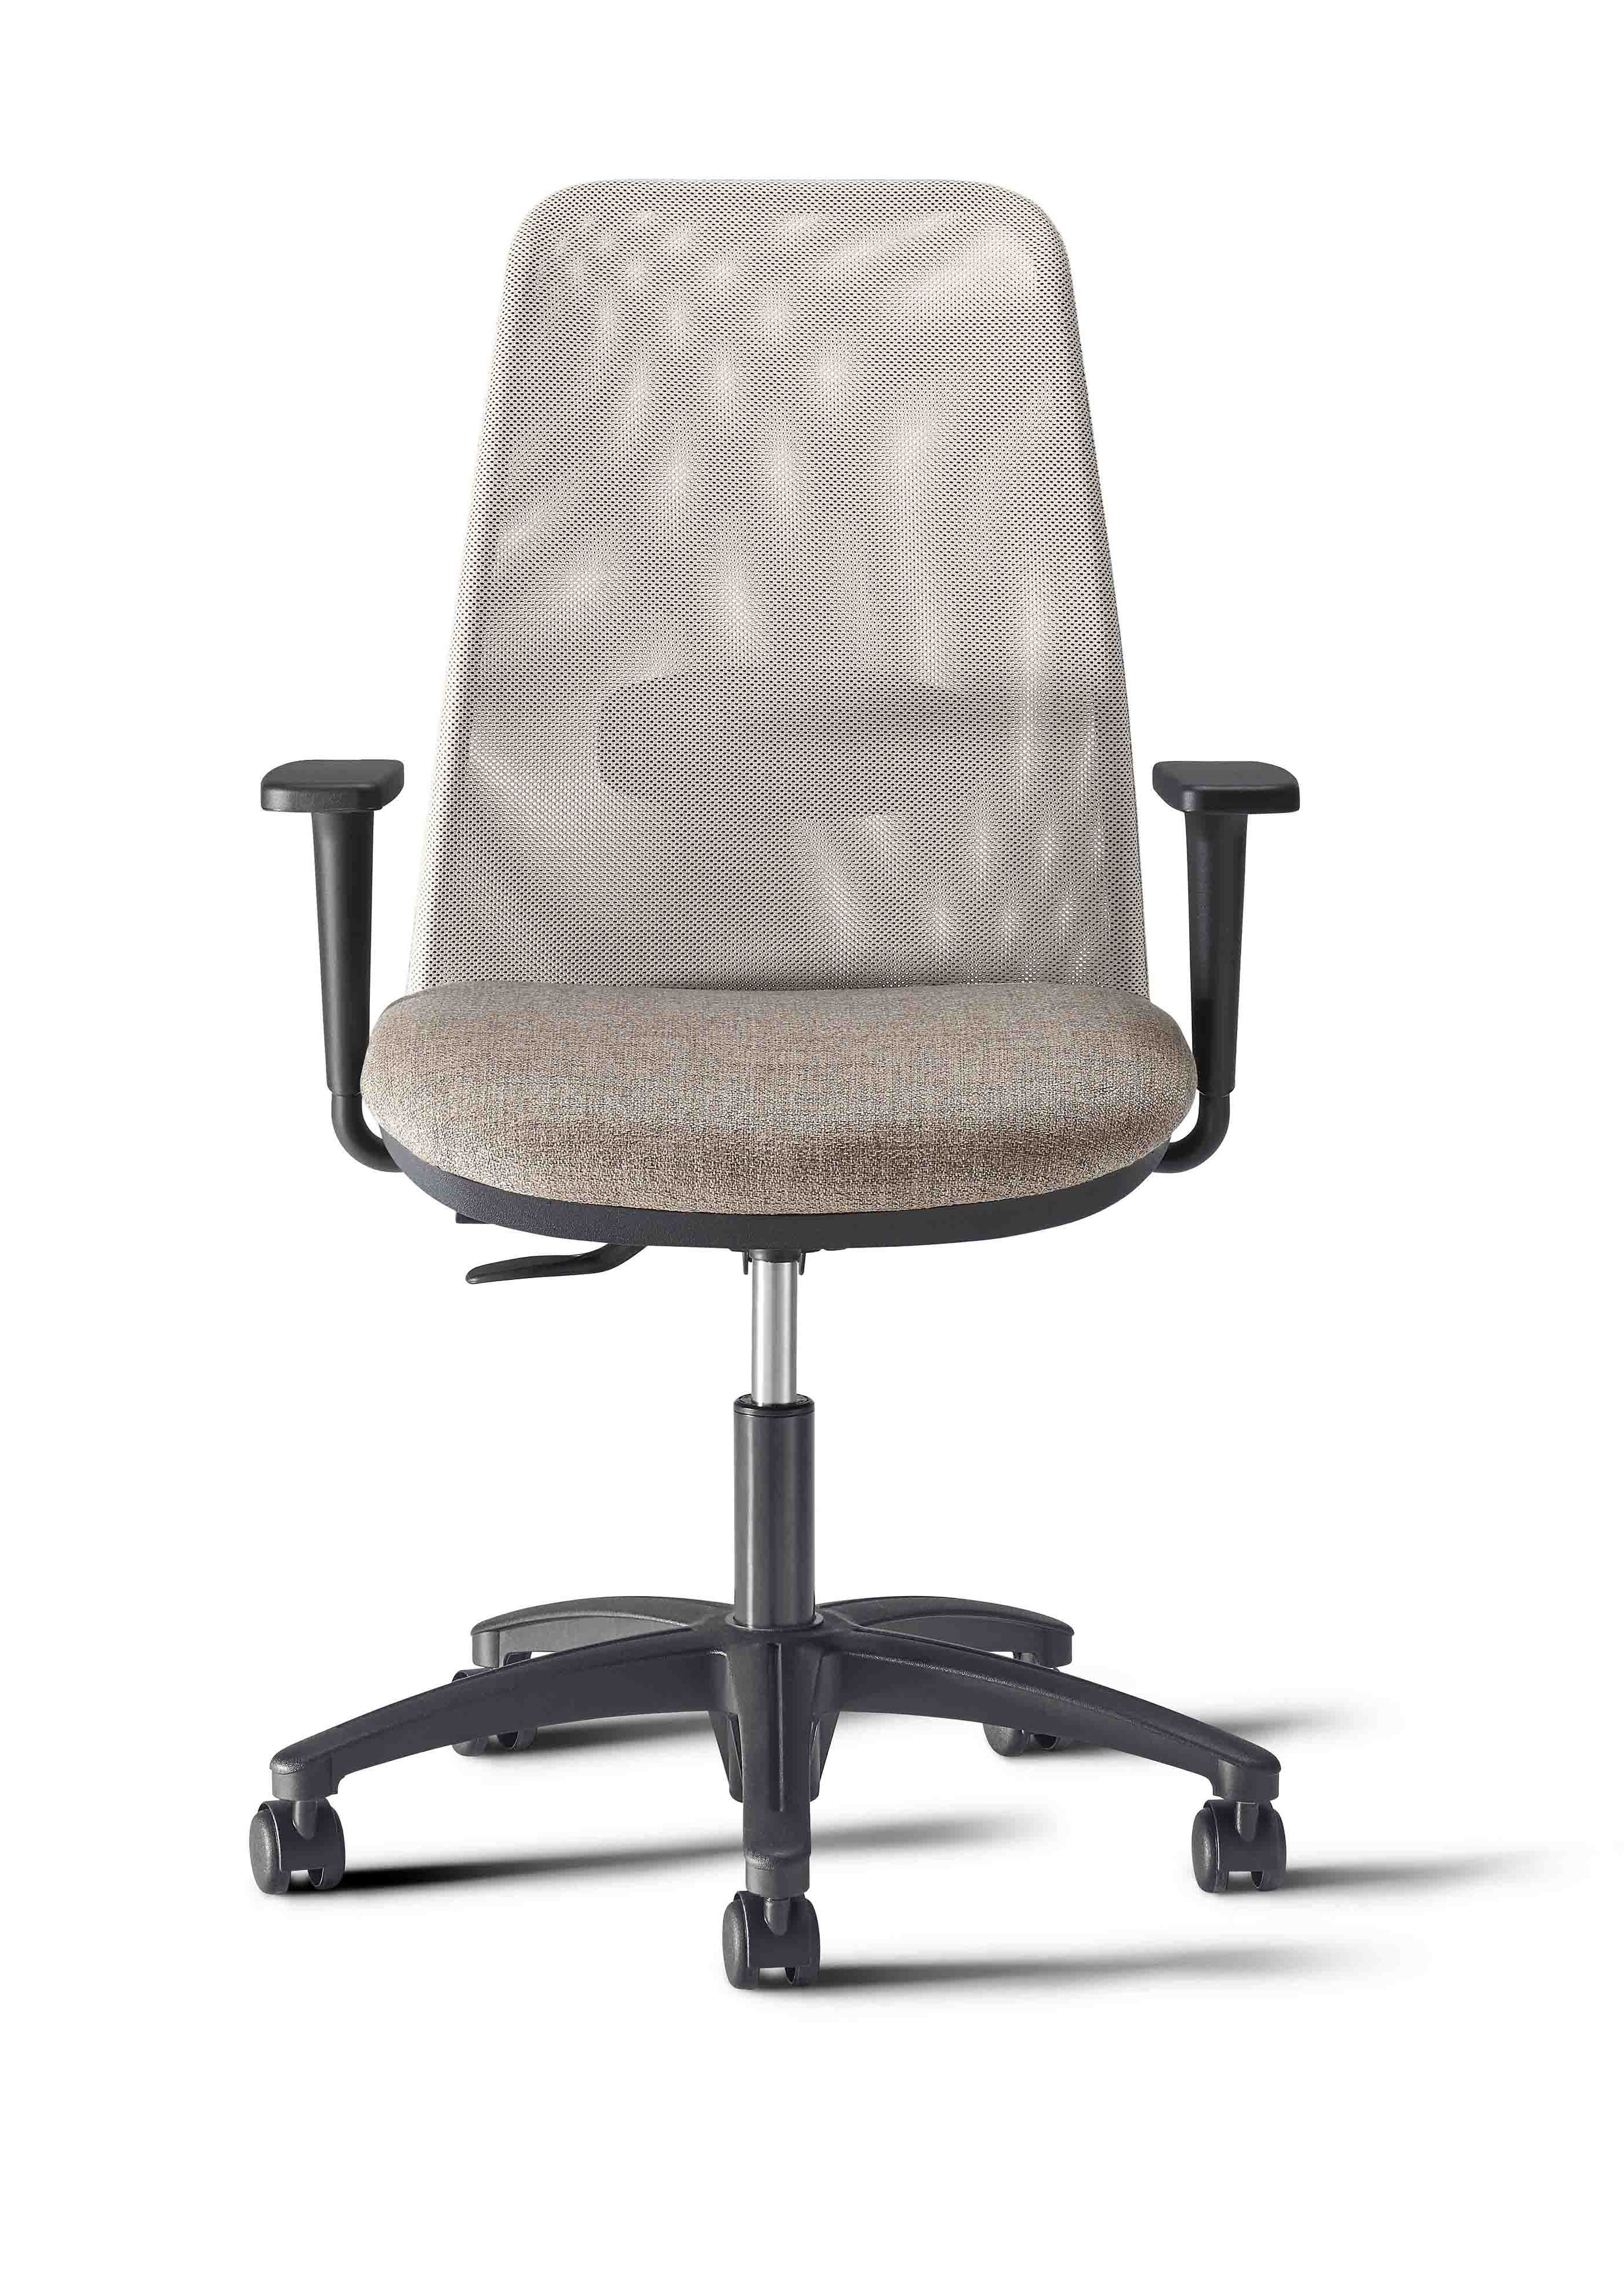 Scegliere la sedia ergonomica per l'ufficio - Castellani SHOP - Blog